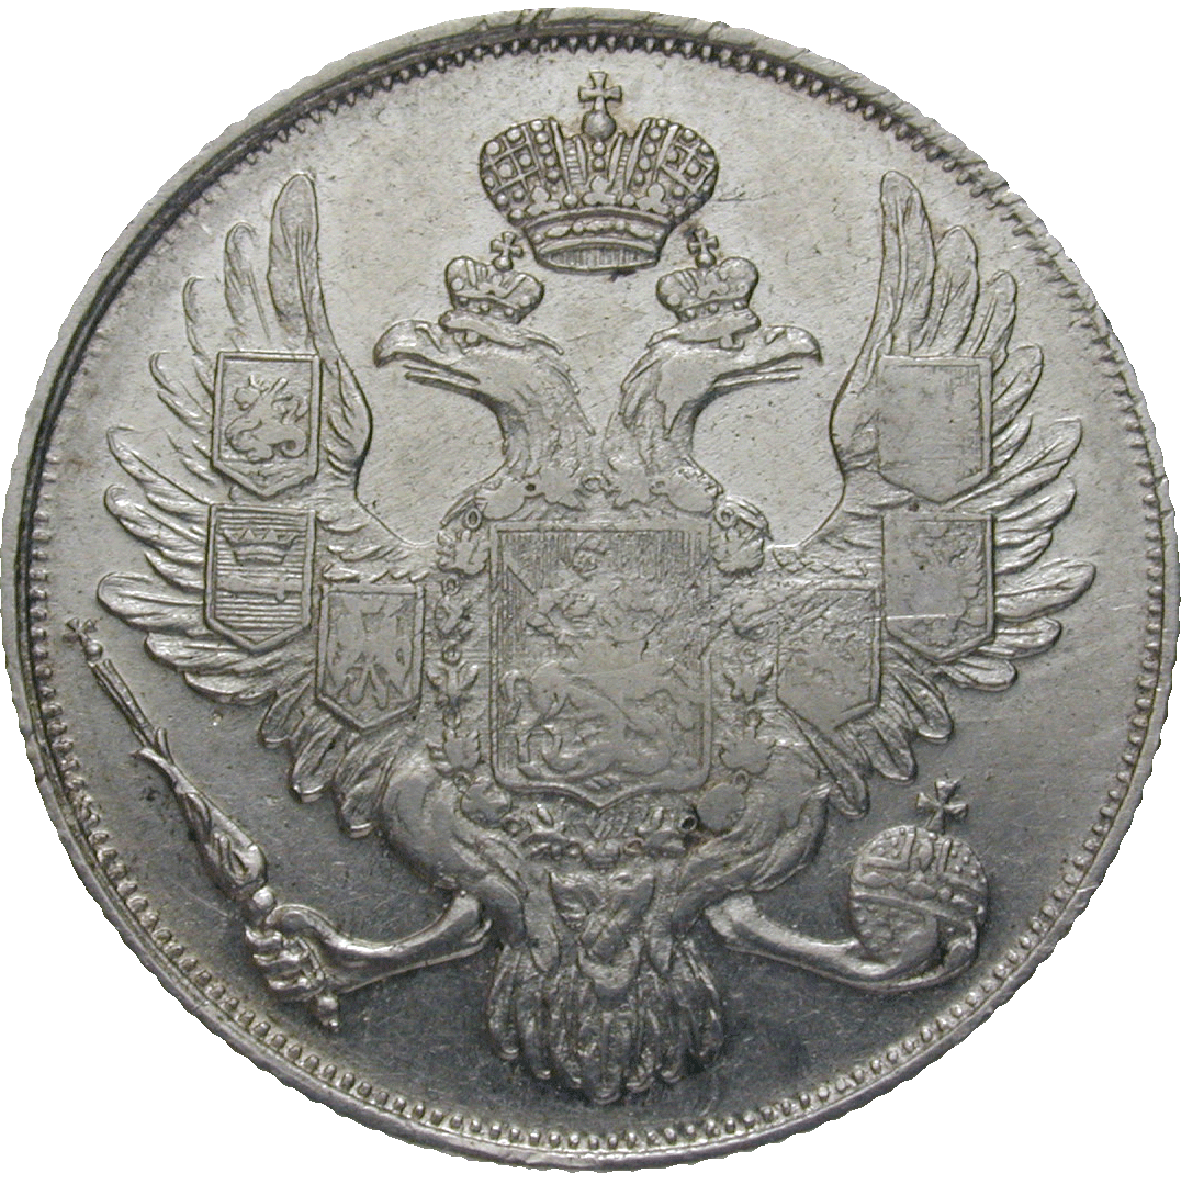 Zarenreich Russland, Nikolaus I., 3 Rubel 1831 (obverse)